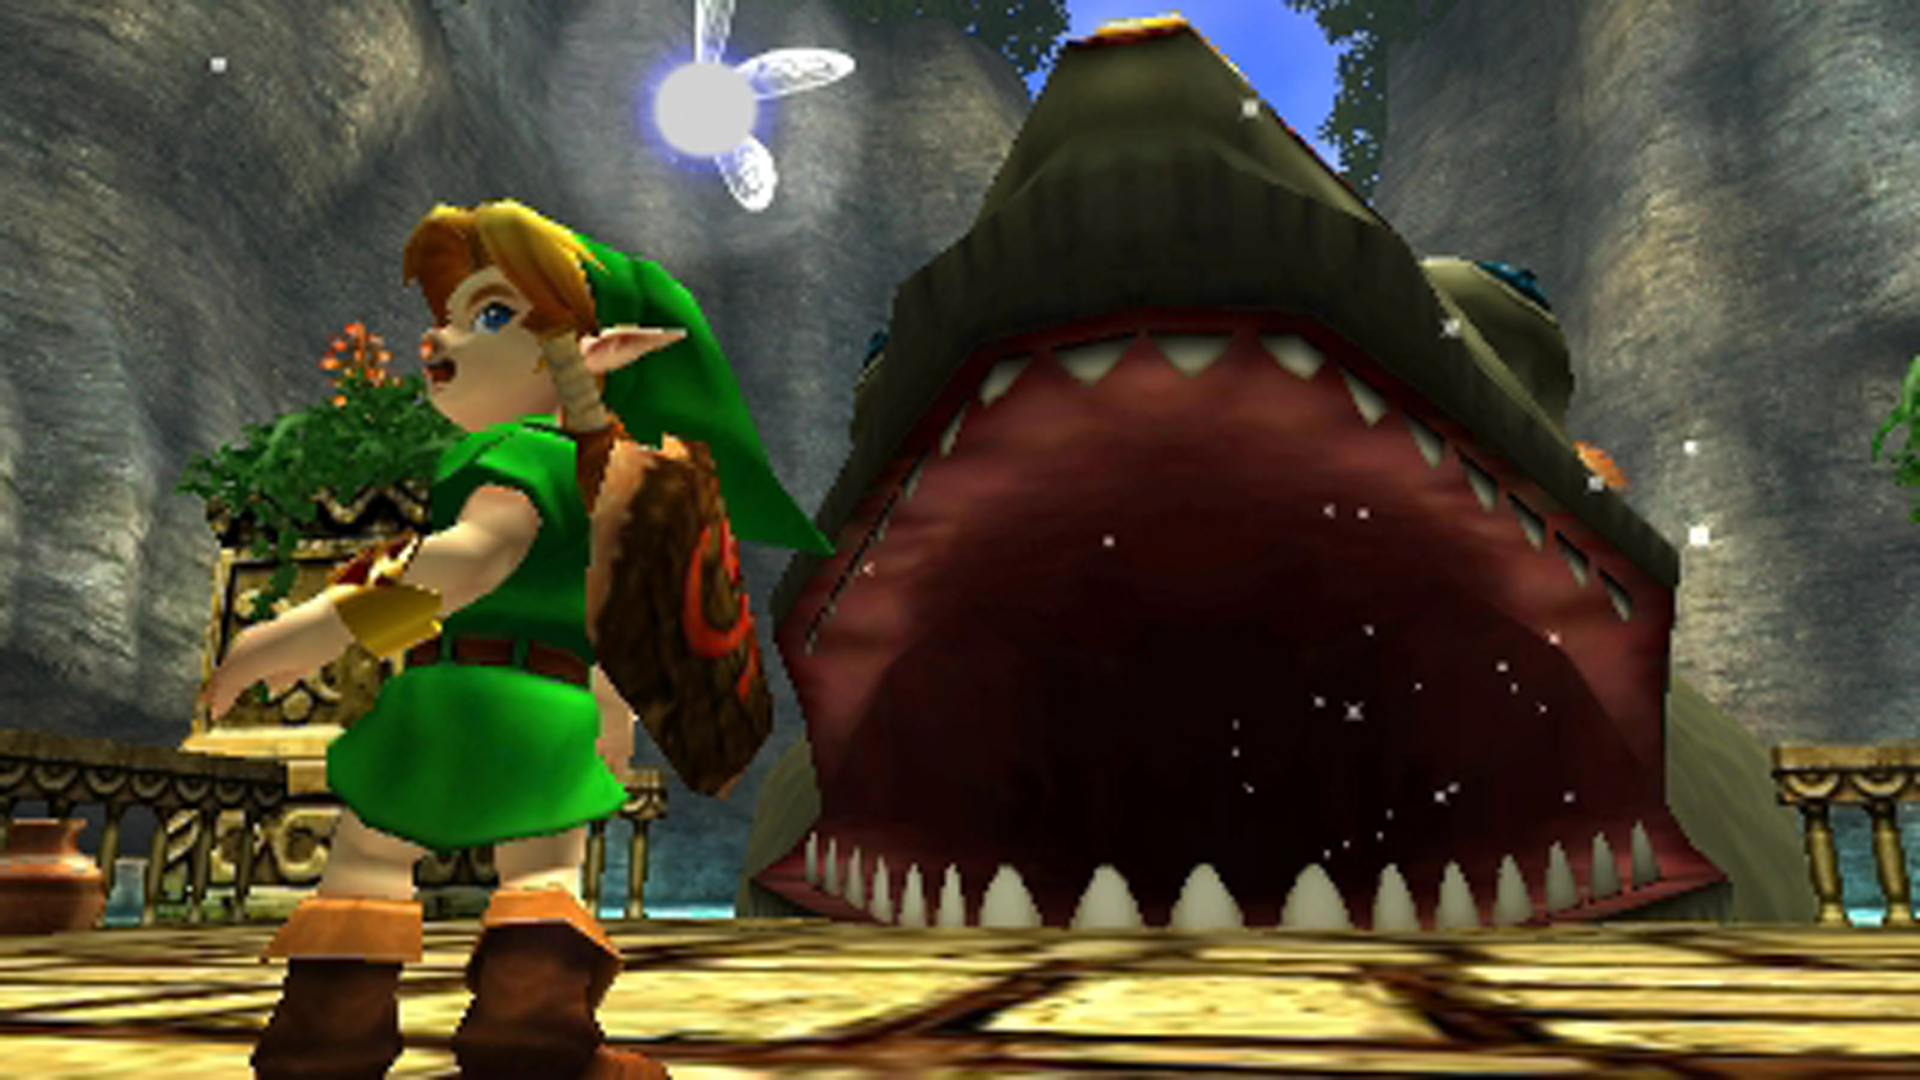 OoT Zelda set ( Switch Edition) [The Legend of Zelda: Breath of